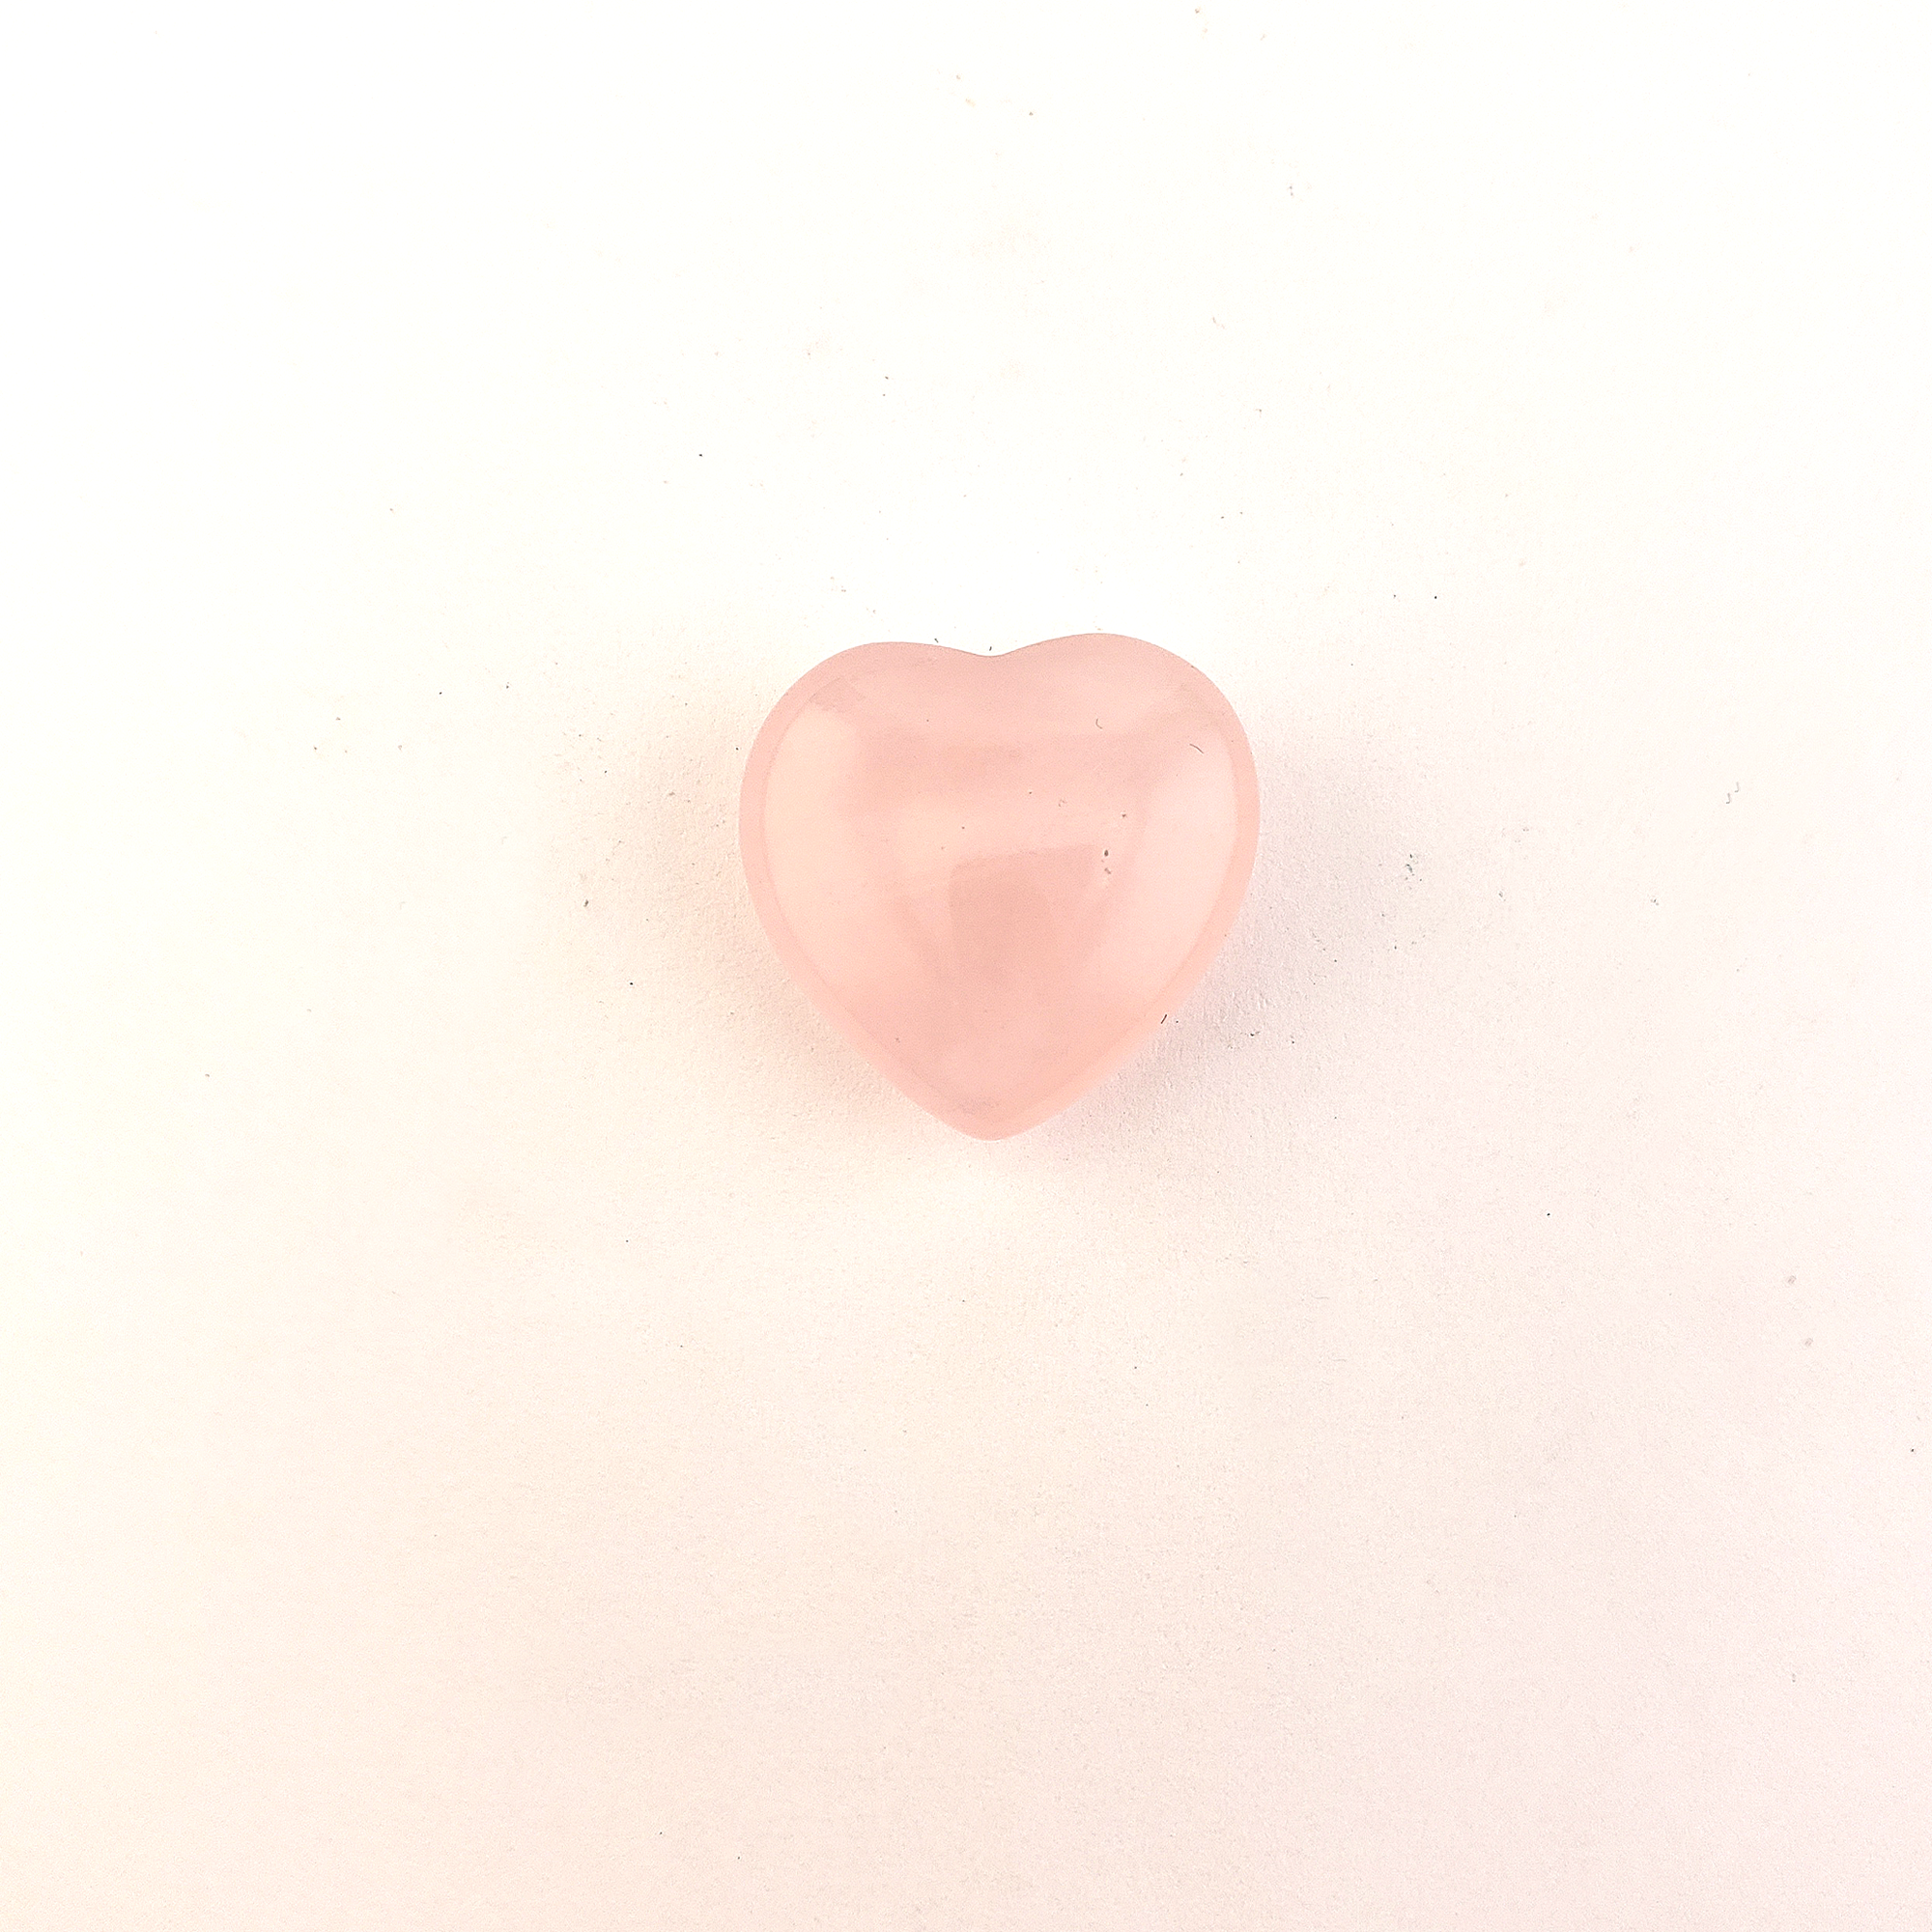 Rose Quartz Crystal Natural Gemstone Heart Mini Carving - One Rose Quartz Crystal Heart on a White Background